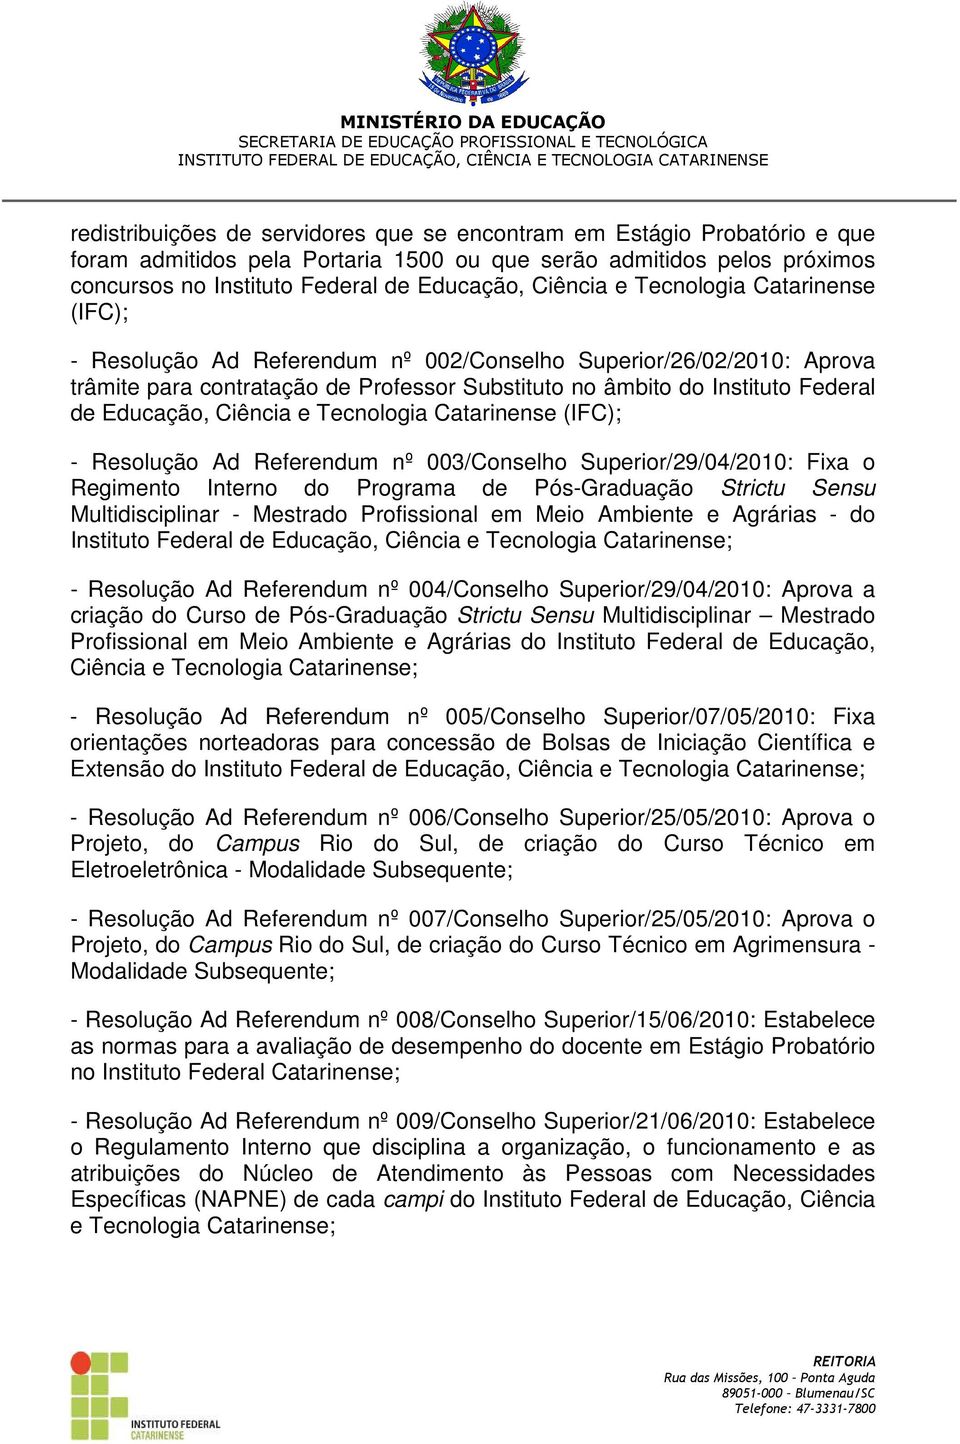 Ciência e Tecnologia Catarinense (IFC); - Resolução Ad Referendum nº 003/Conselho Superior/29/04/2010: Fixa o Regimento Interno do Programa de Pós-Graduação Strictu Sensu Multidisciplinar - Mestrado